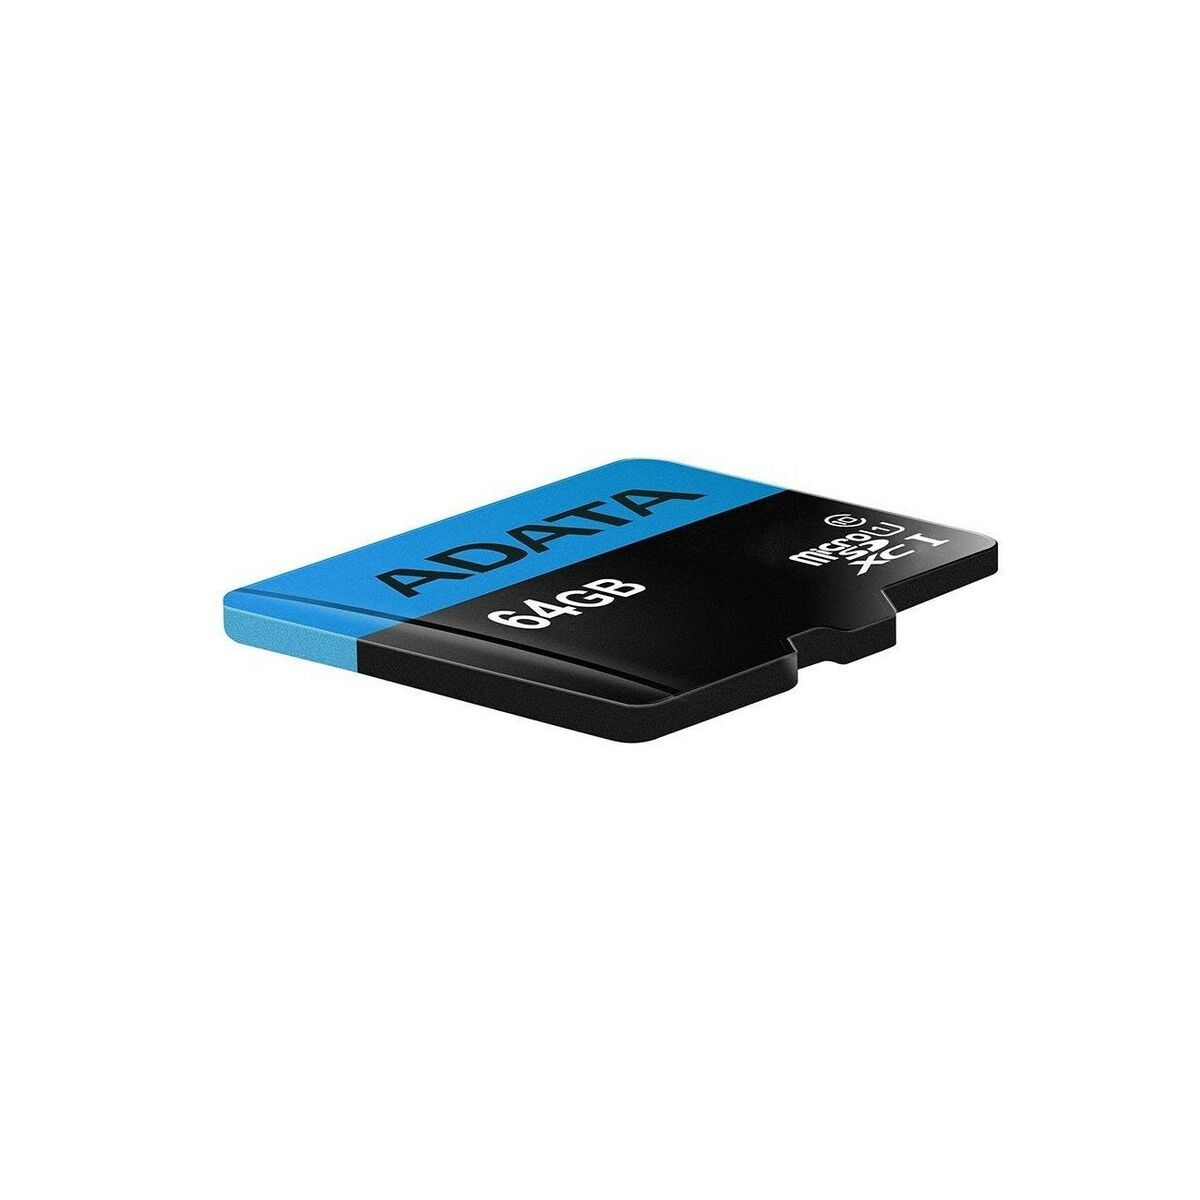 Κάρτα micro SD Adata PAMADTSDG0022 64 GB